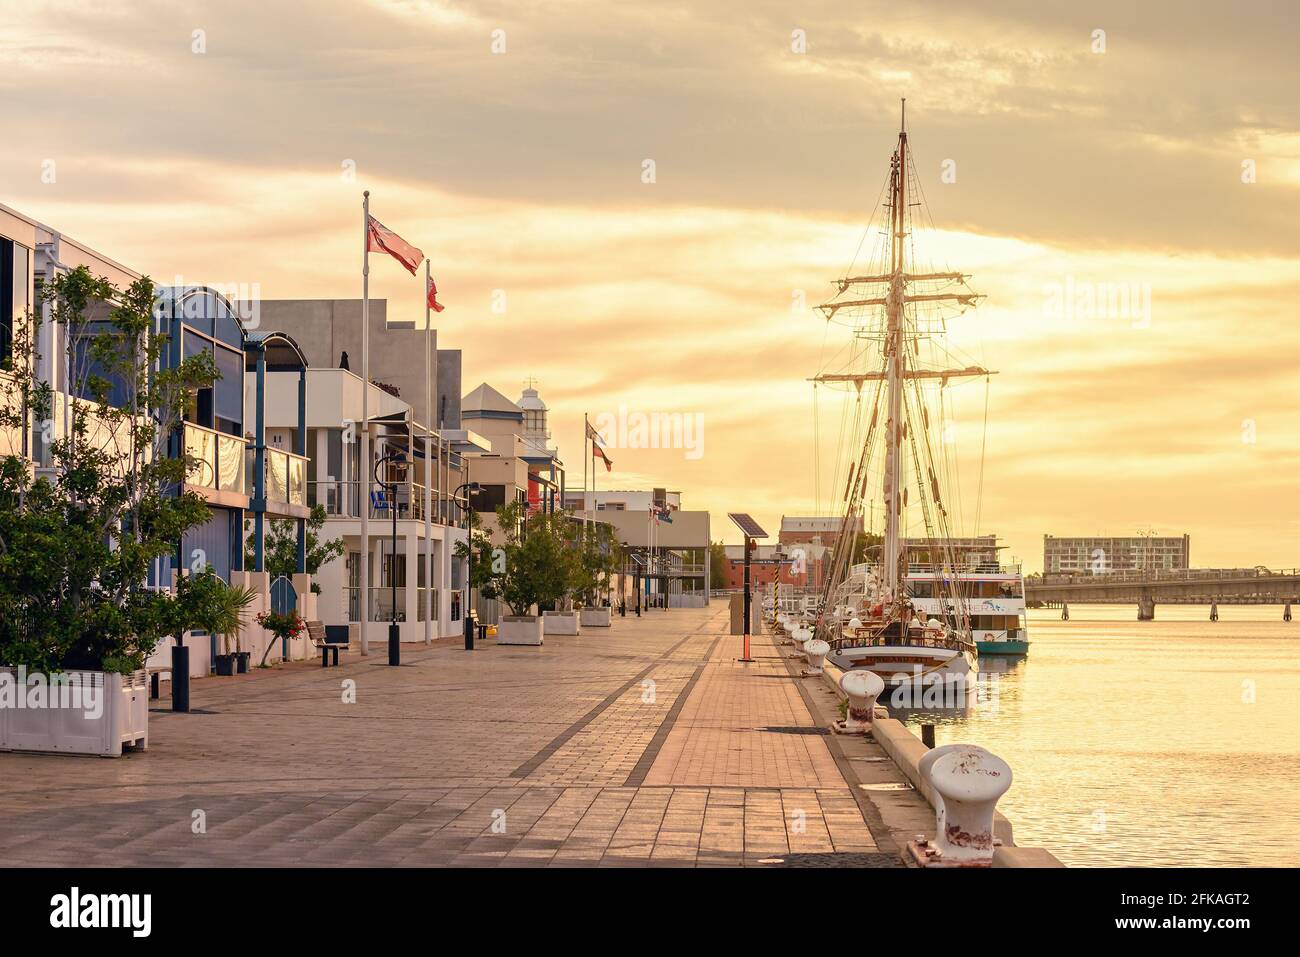 Port Adelaide, Australien - 8. Dezember 2018: Port Adelaide dockt bei Sonnenuntergang mit Häusern und Schiffen in Port River an Stockfoto